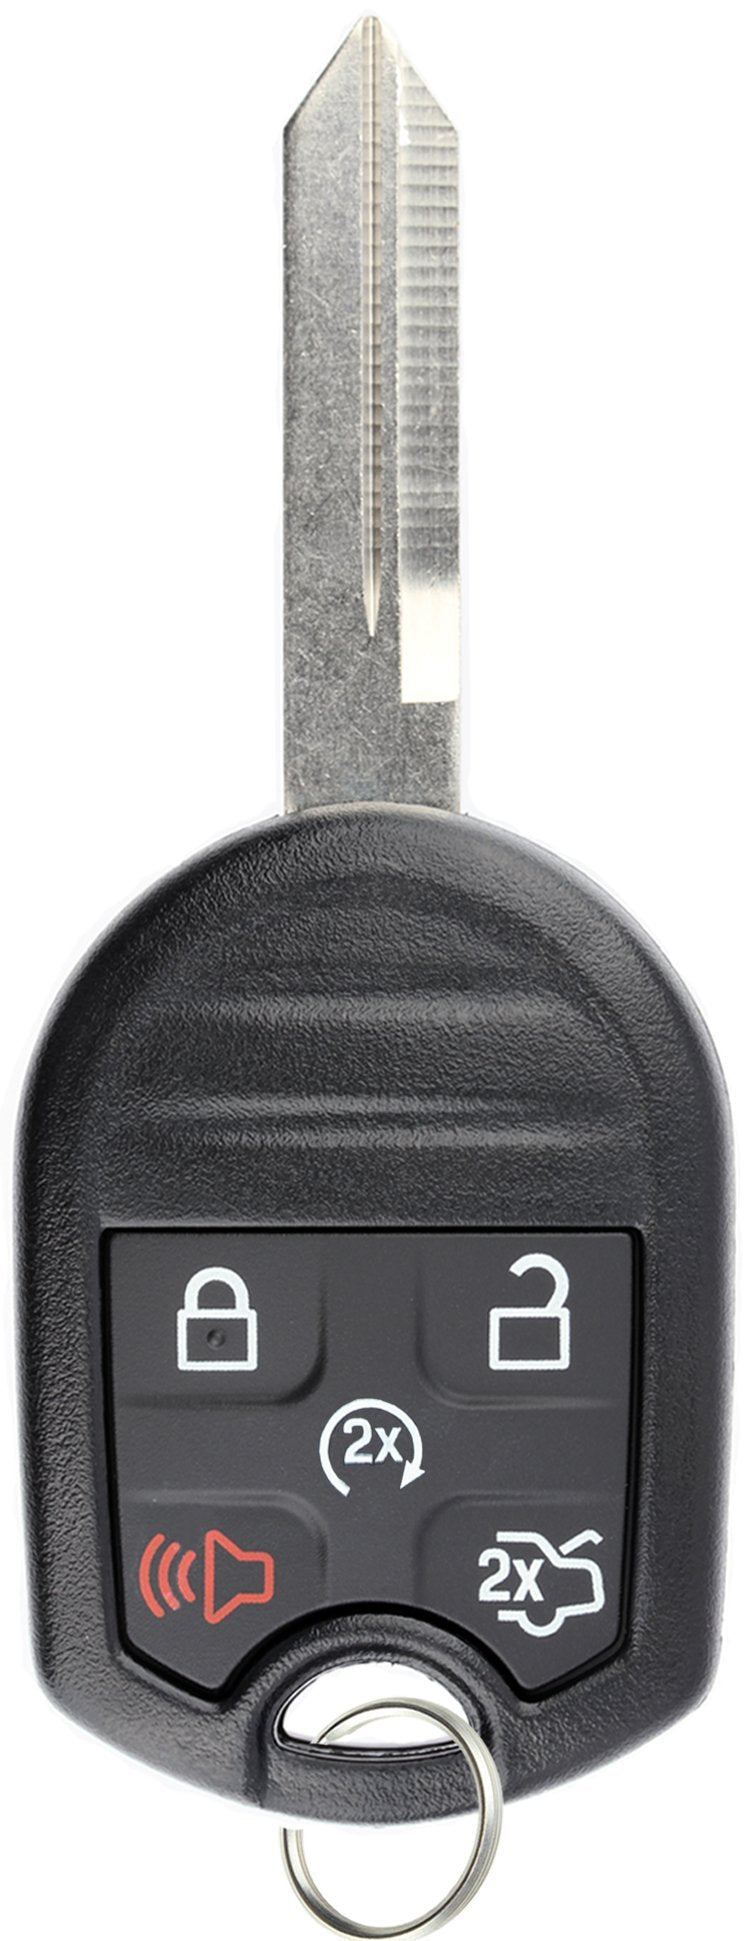  [AUSTRALIA] - KeylessOption Keyless Entry Remote Control Fob Uncut Blank Ignition Car Key Remote Start for CWTWB1U793